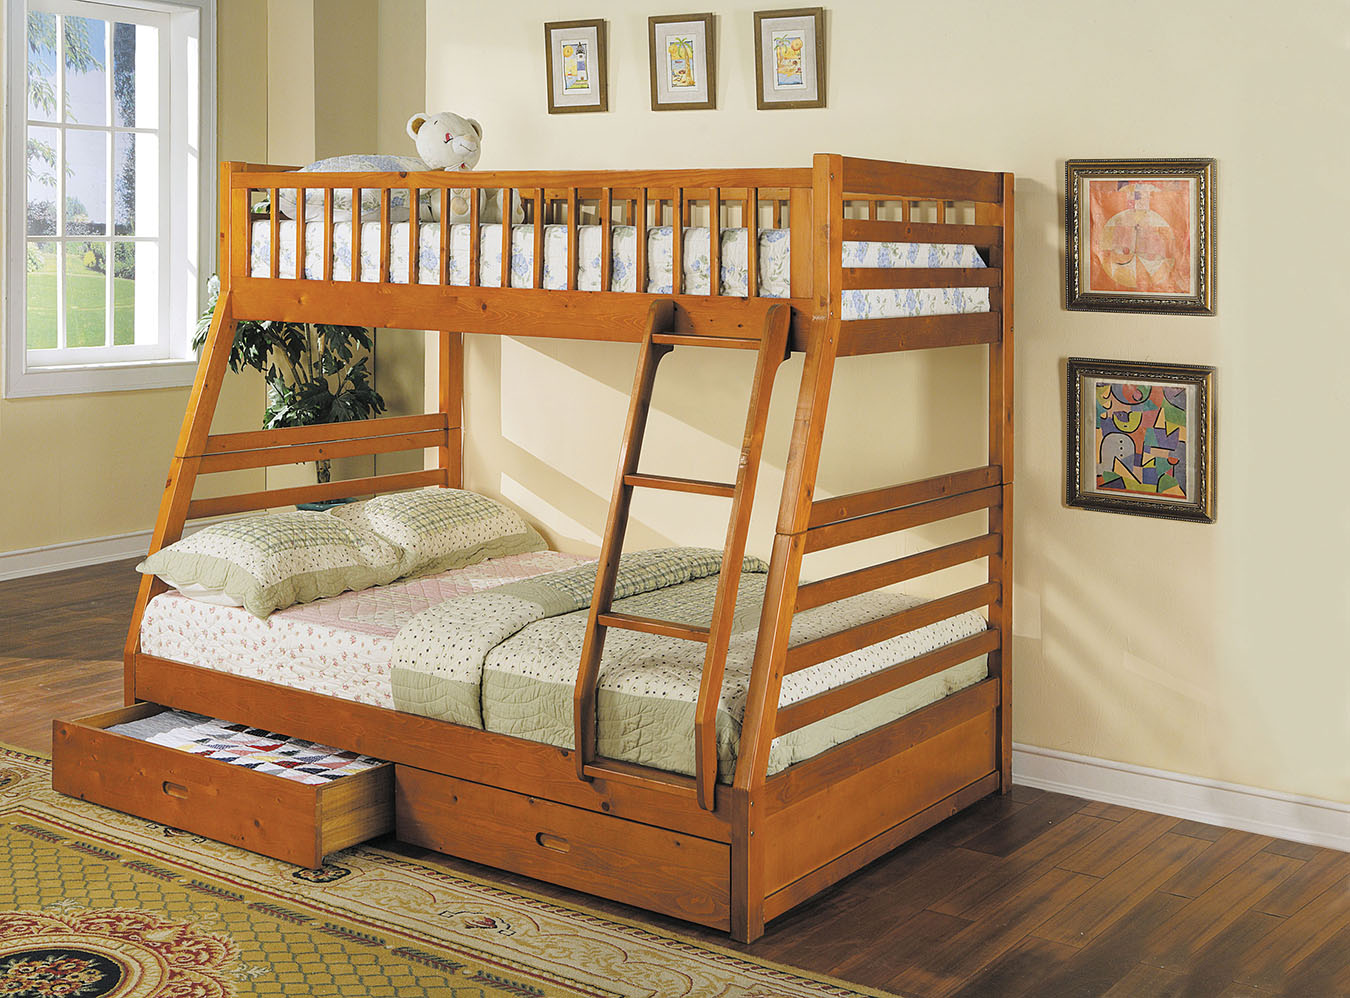 79" X 56" X 65" Honey Oak Pine Wood Bunk Bed Default Title